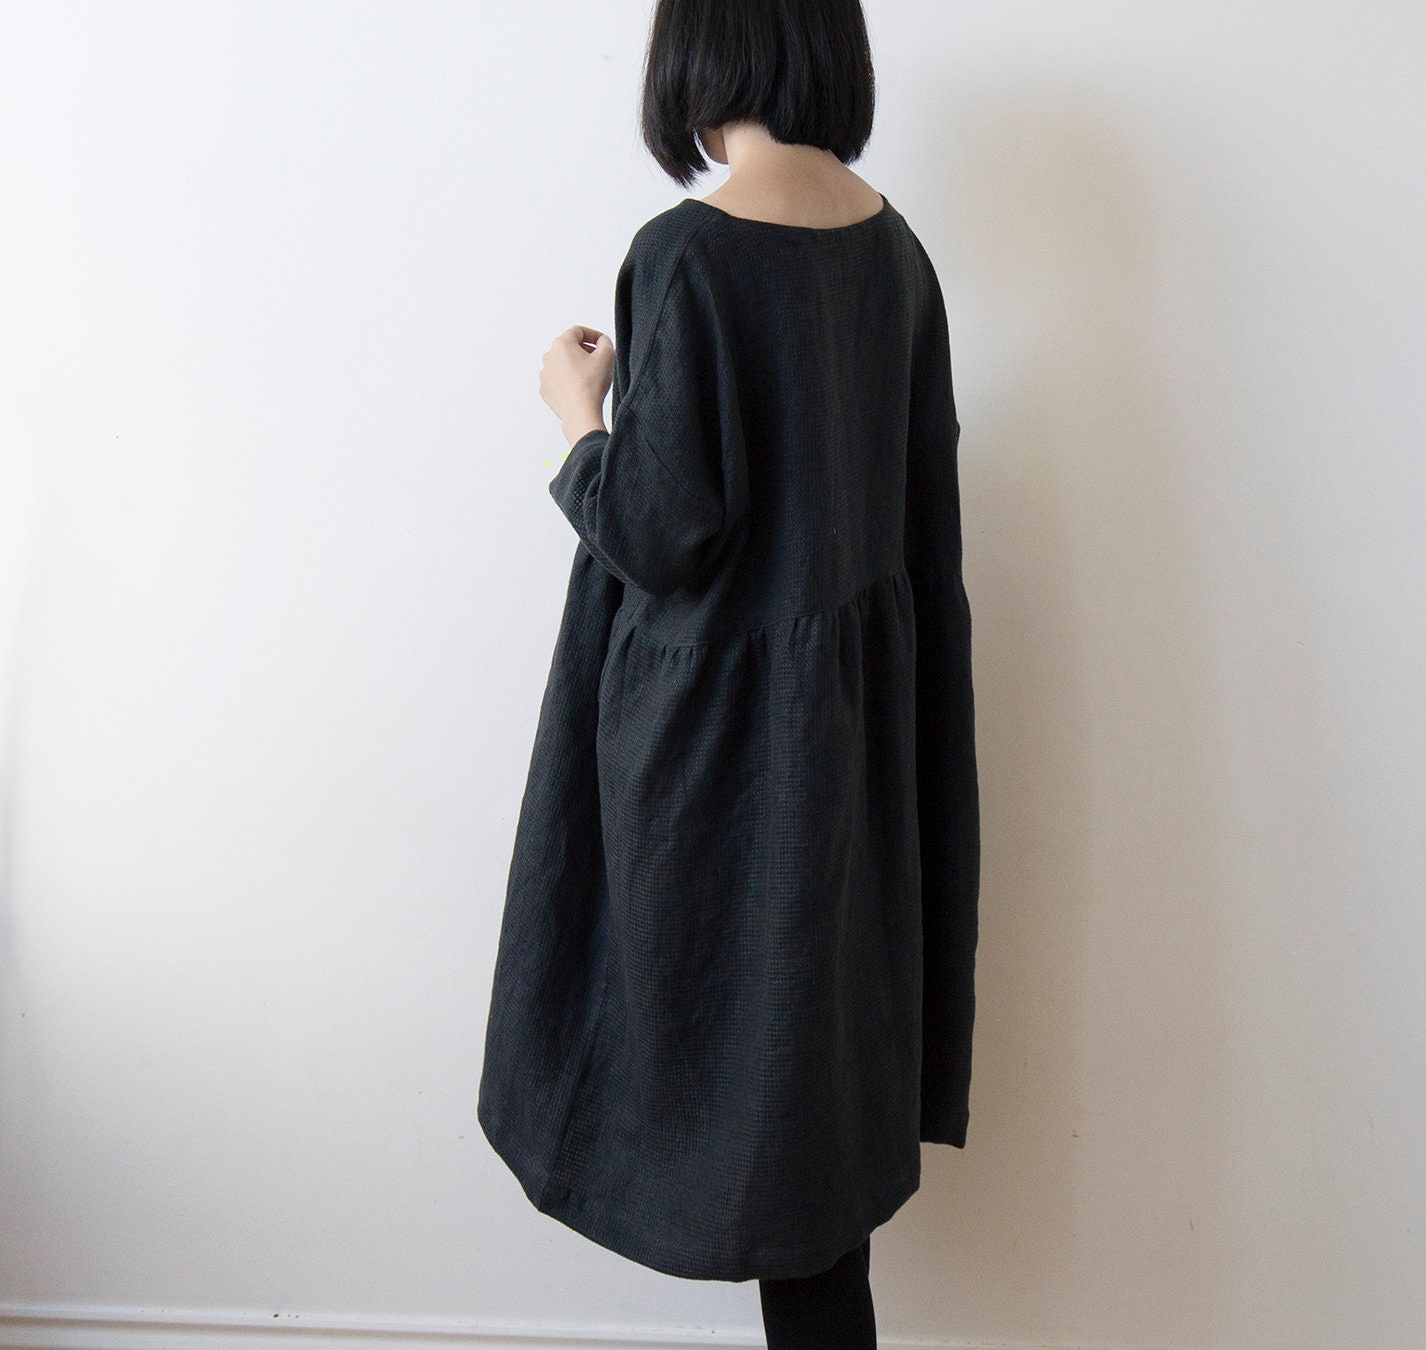 Black textured linen dress